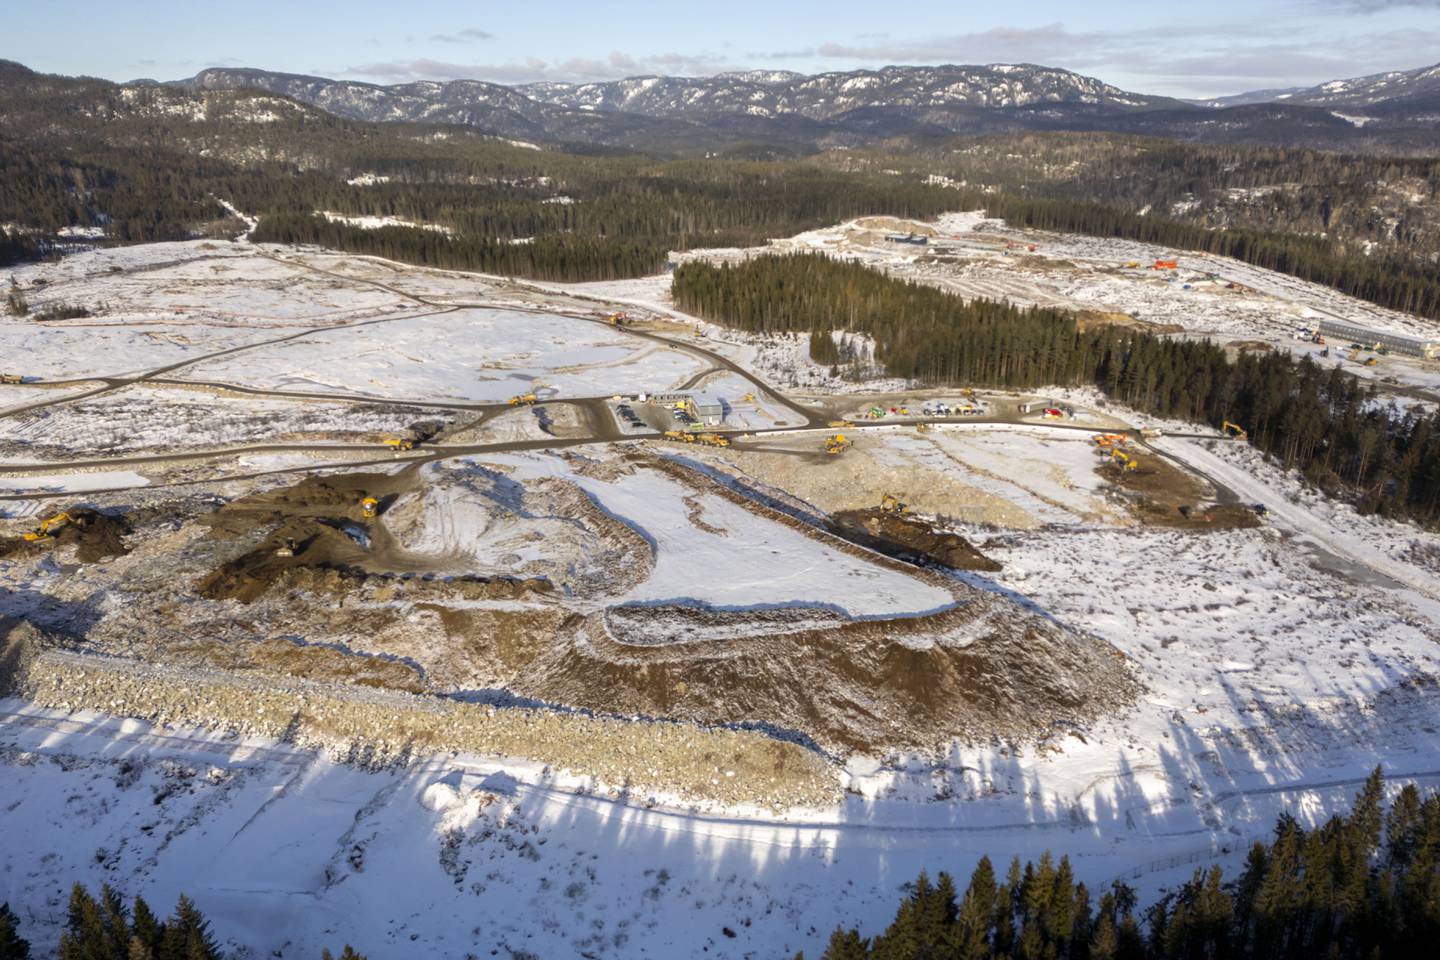 Nedbyggingen av natur fortsetter for fullt, blant annet i Skien i Telemark. I dette området som inntil ganske nylig var dekket av skog, skal Googles nye datasenter stå klart i 2026.